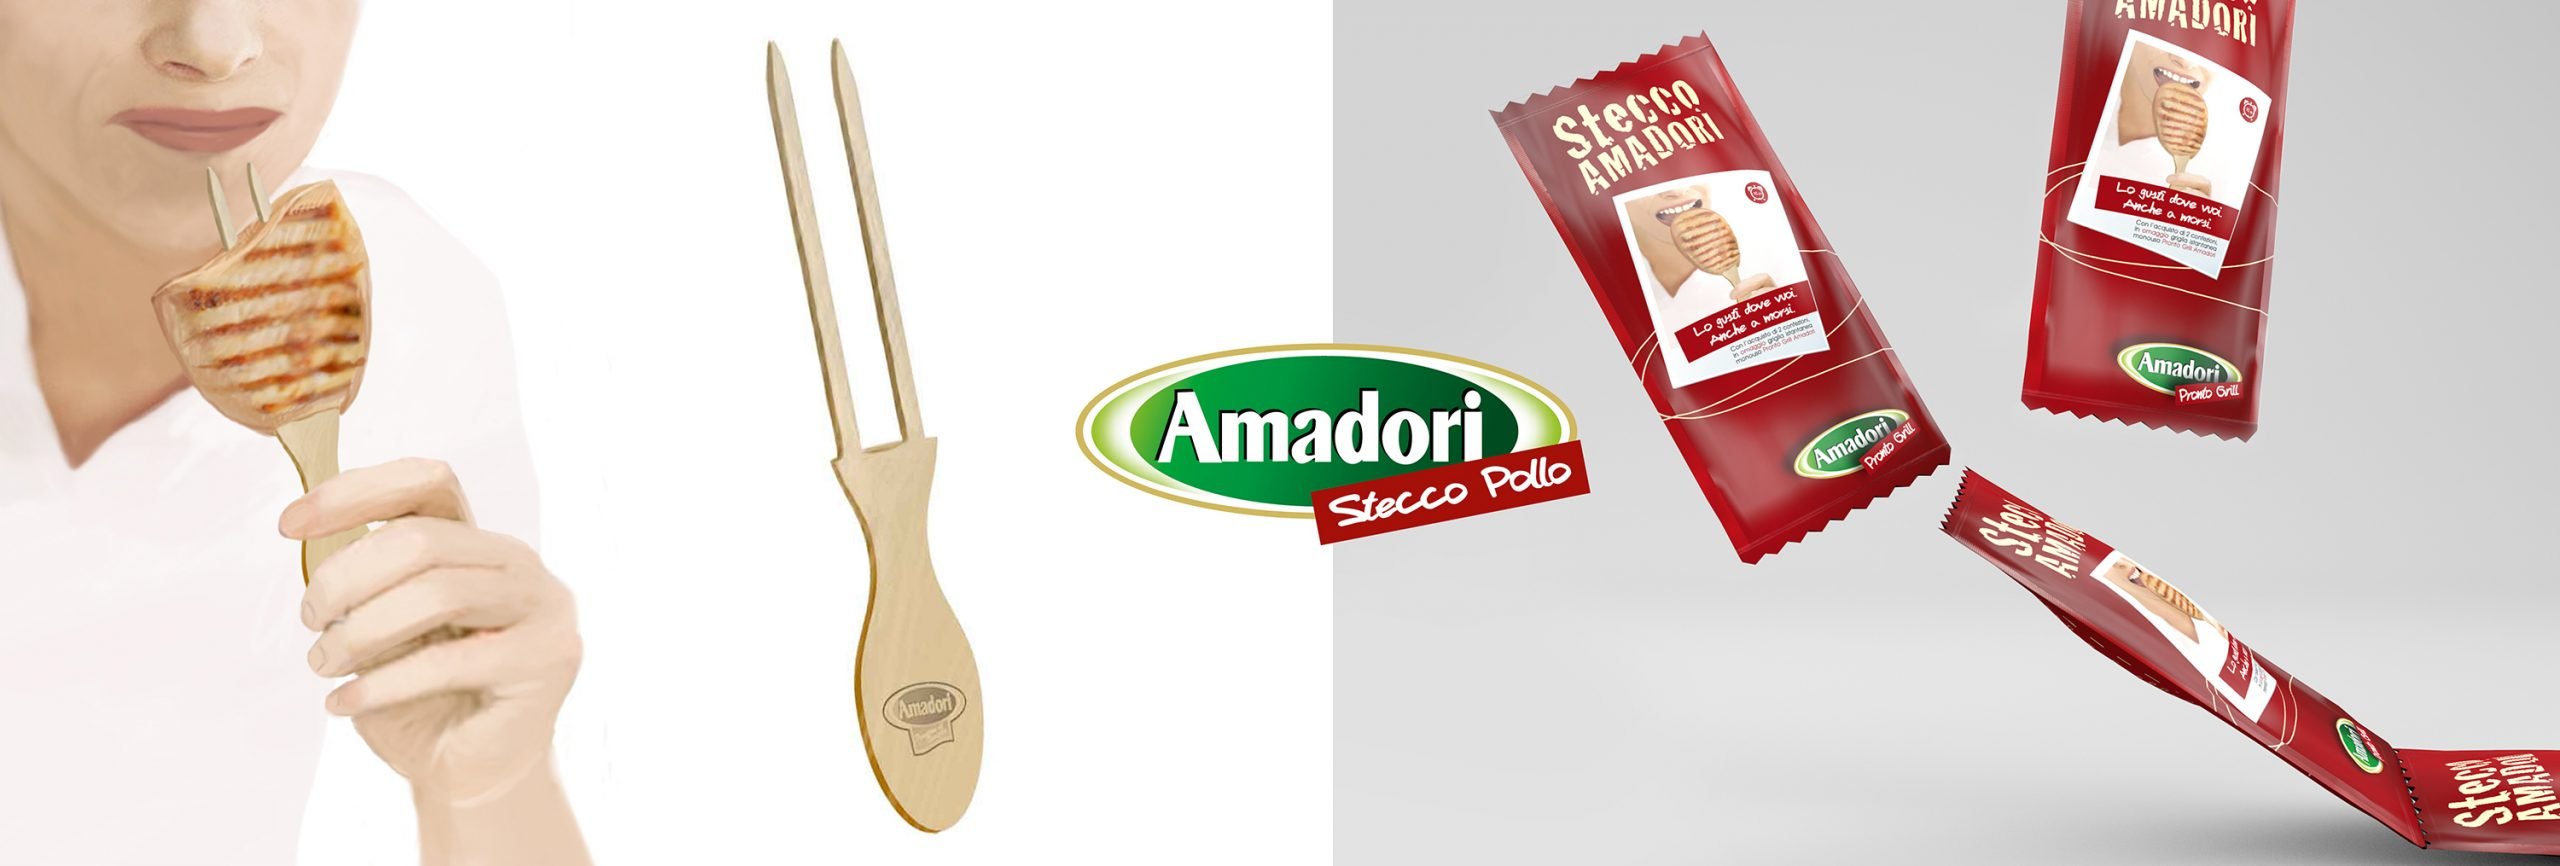 Branding e product design per Amadori: Stecco Pollo